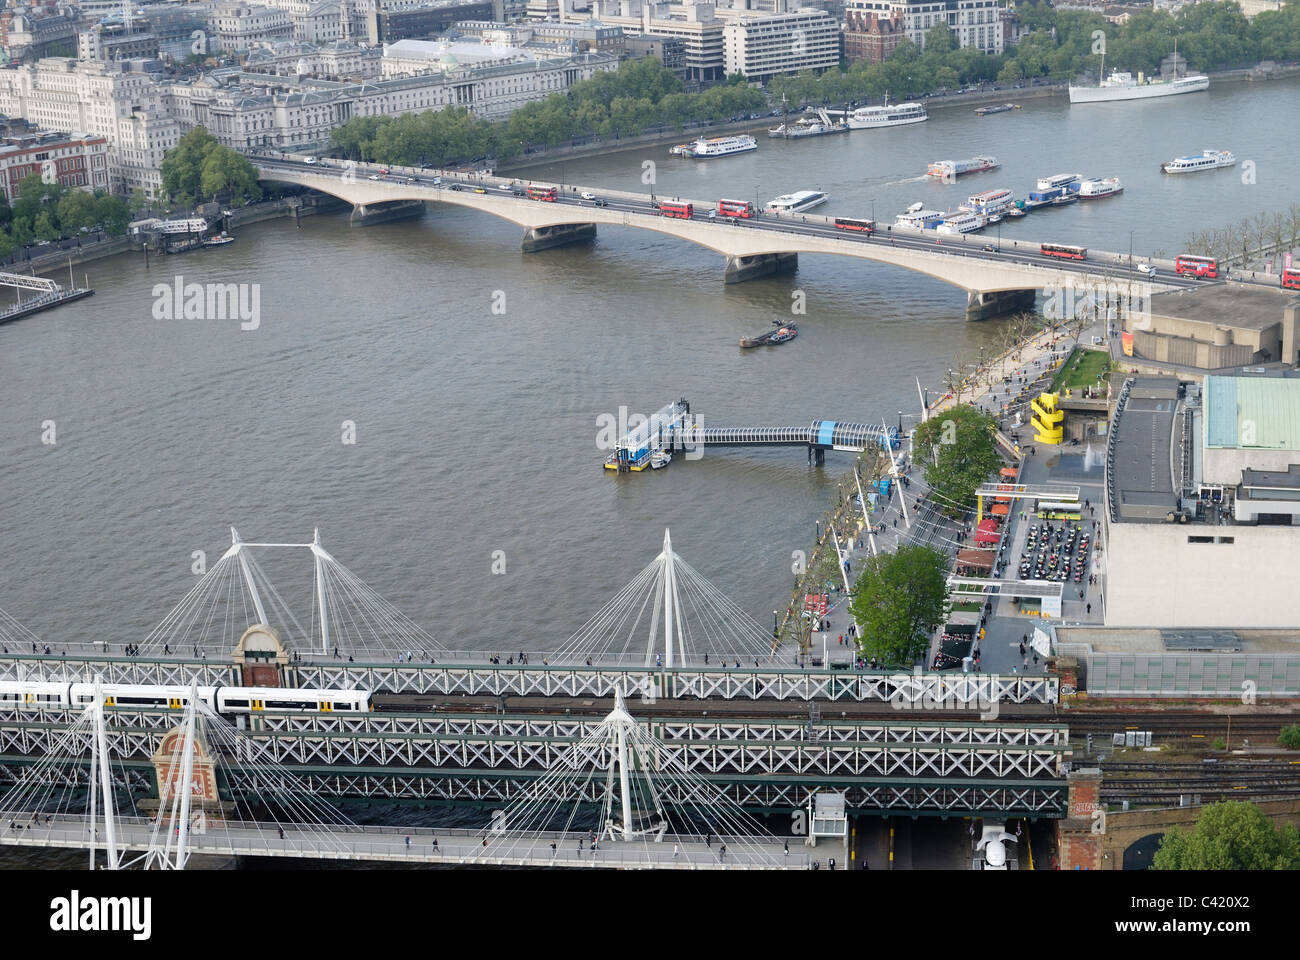 Hungerford und Waterloo Brücken über den Fluss Themse. Westminster. London. England. South Bank Centre auf rechten Seite. Stockfoto